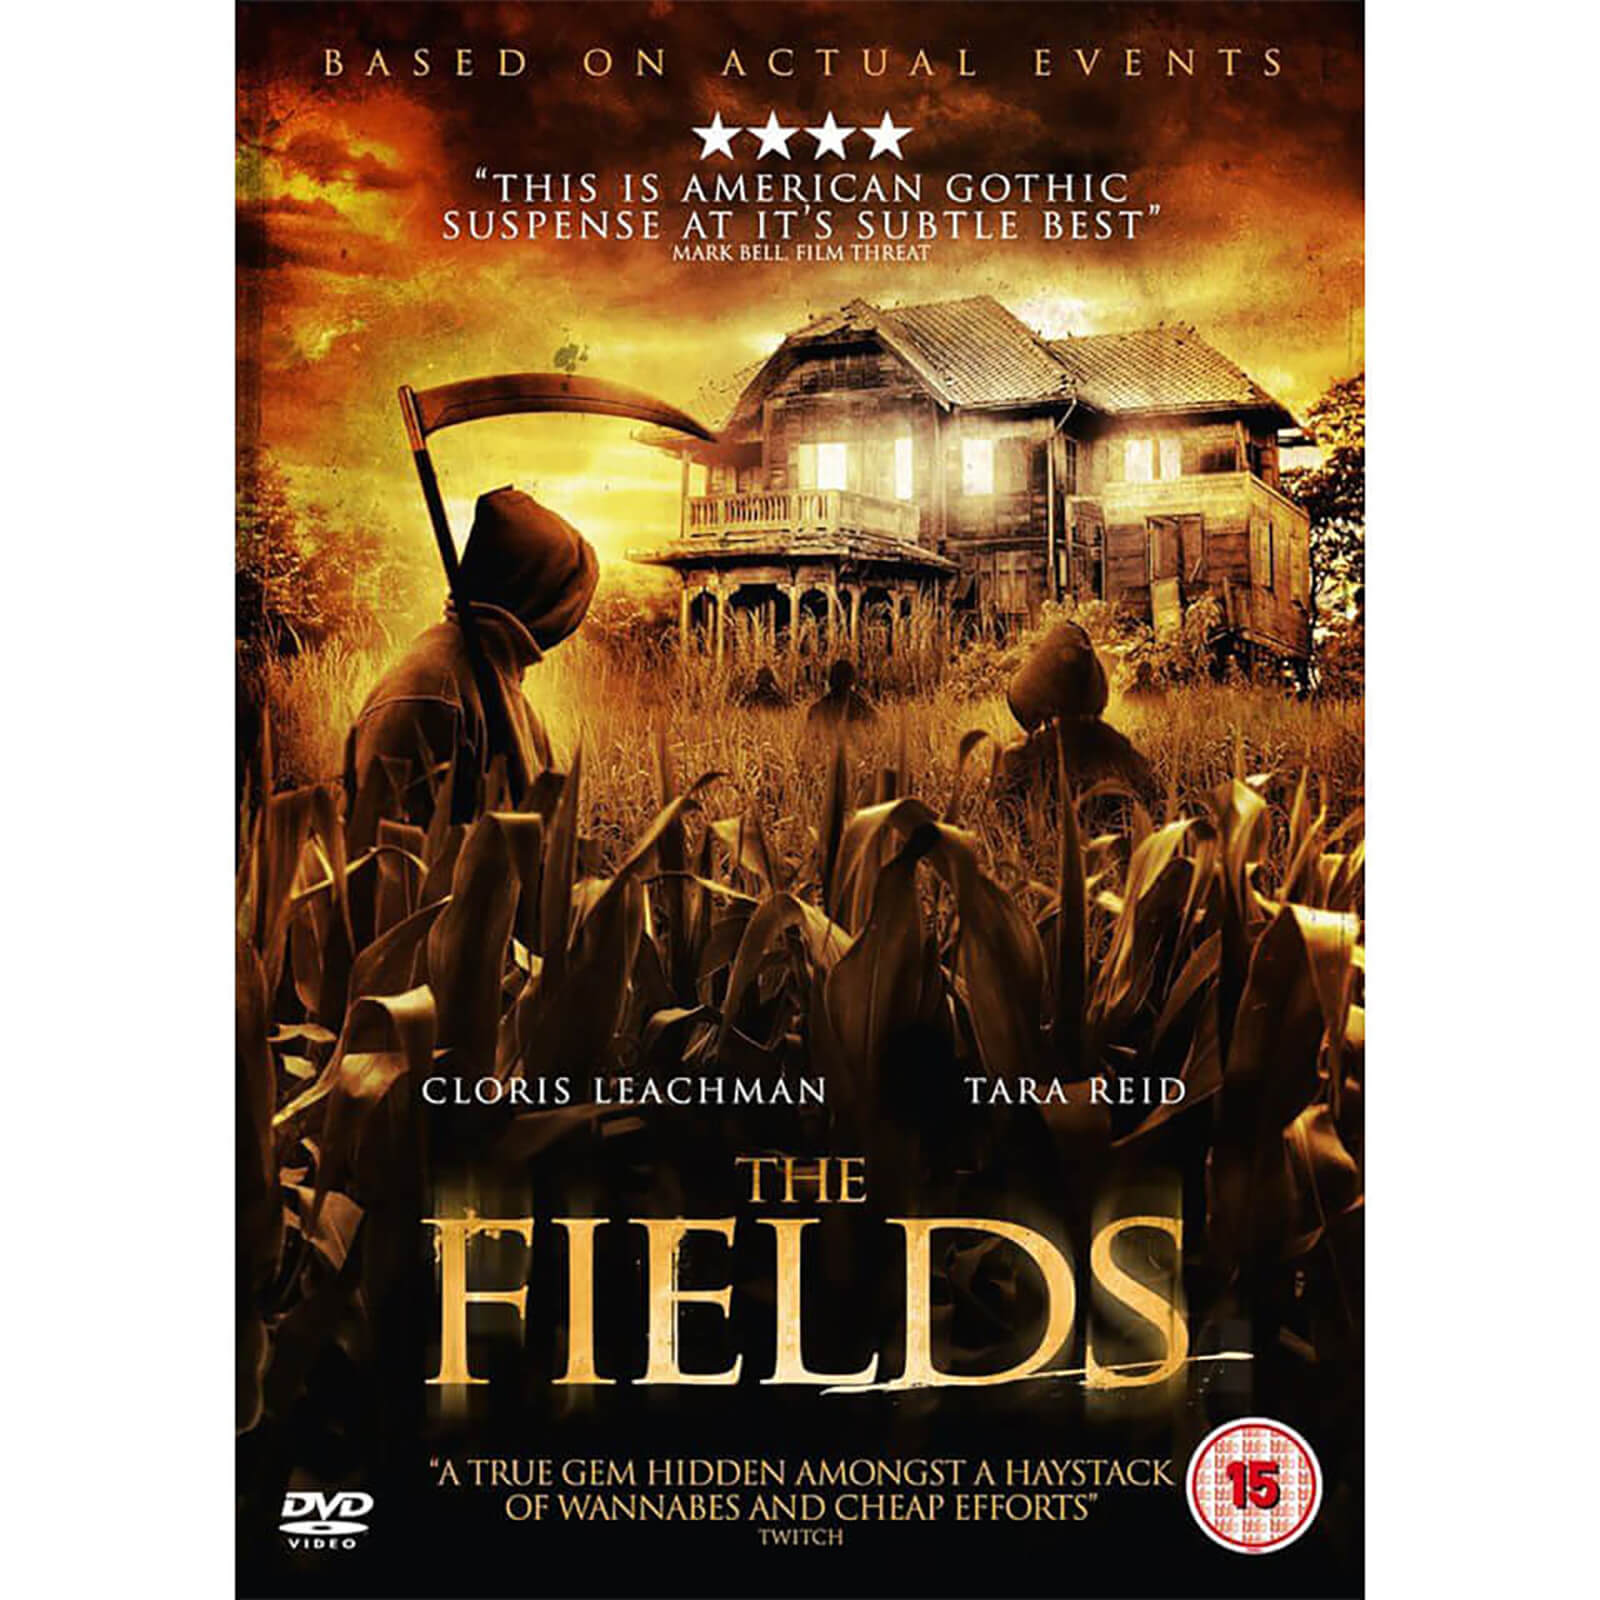 The fields 2011 poster. The fields 2011 DVD Cover. True fields